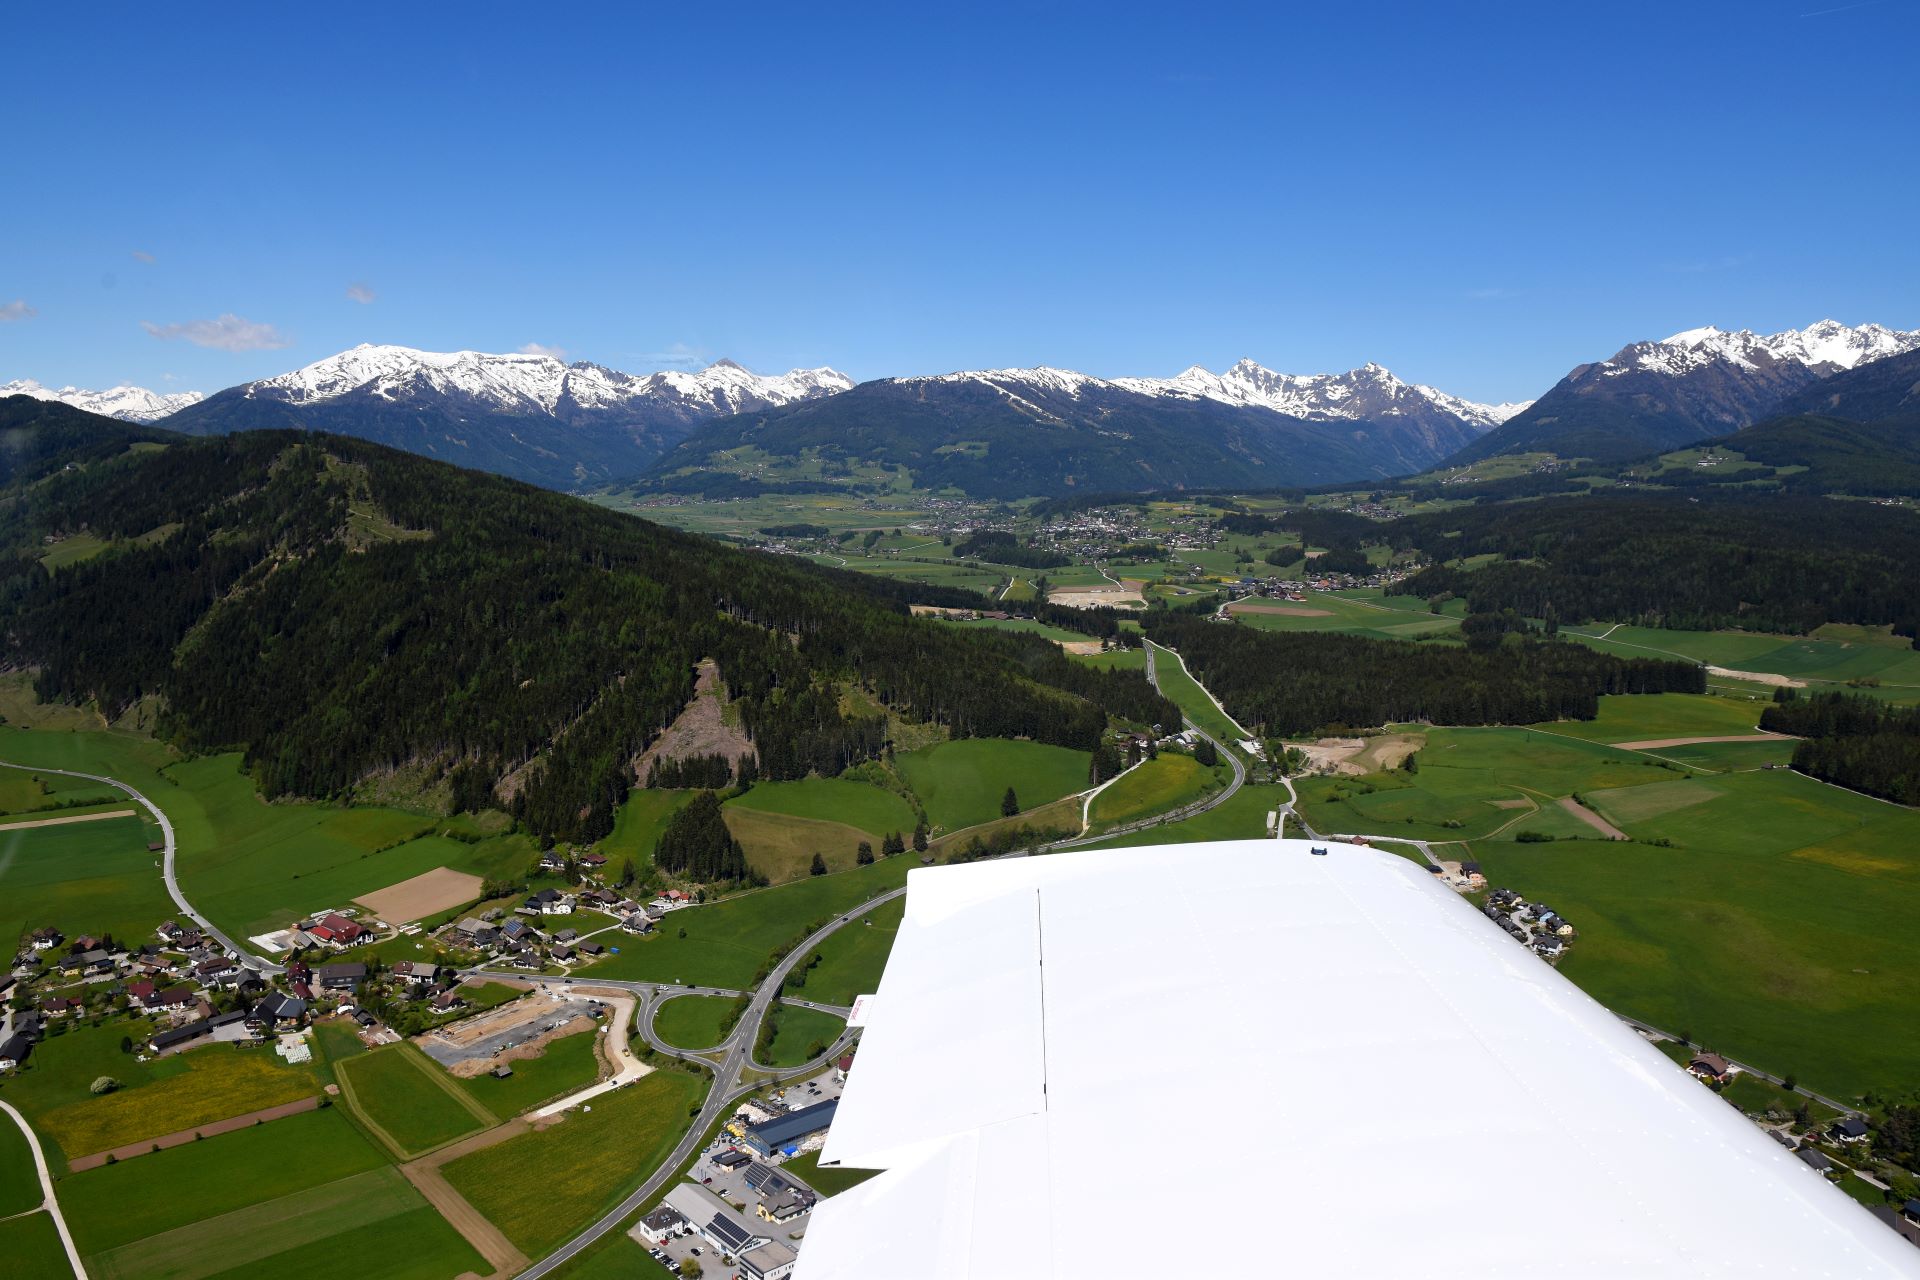 Flugstunde Alpentour, Queranflug auf den Flugplatz Mauterndorf LOSM